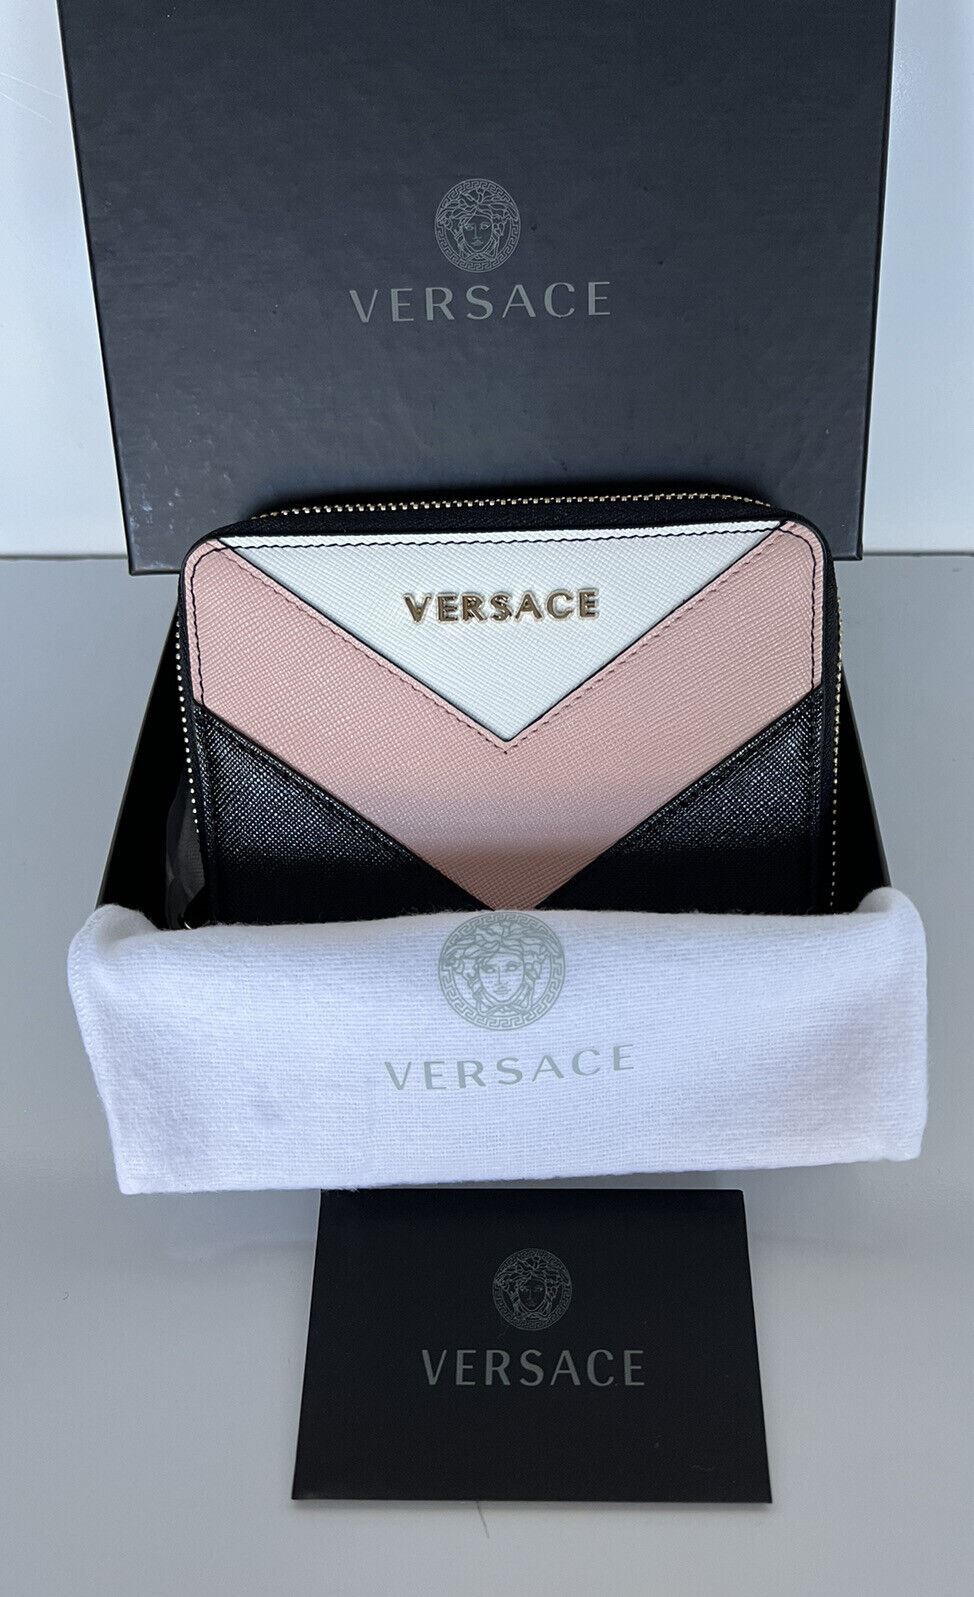 Neu mit Etikett: Versace Schwarz/Weiß/Rosa Kalbsleder-Geldbörse mit mittlerem Reißverschluss, hergestellt in Italien 593 